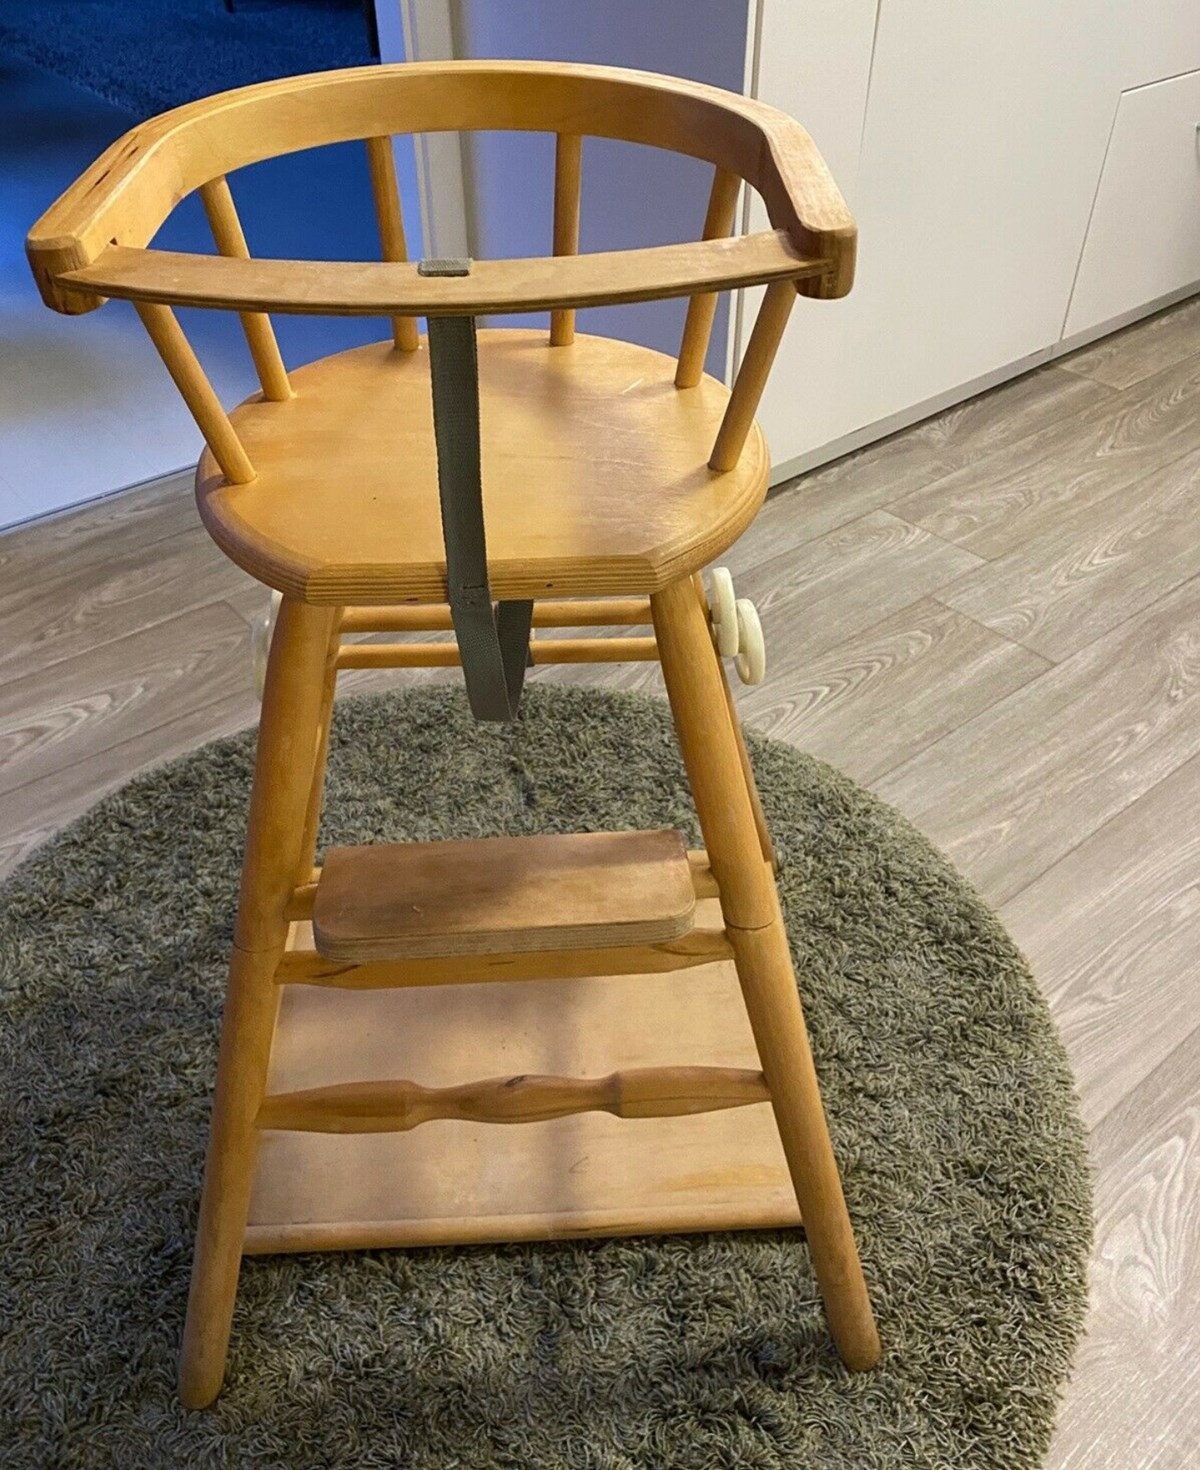 I Skovlunde er denne højstol til salg. Det er Birgitte, der har den til salg. Stolen kan du få i bytte for 150 kroner.